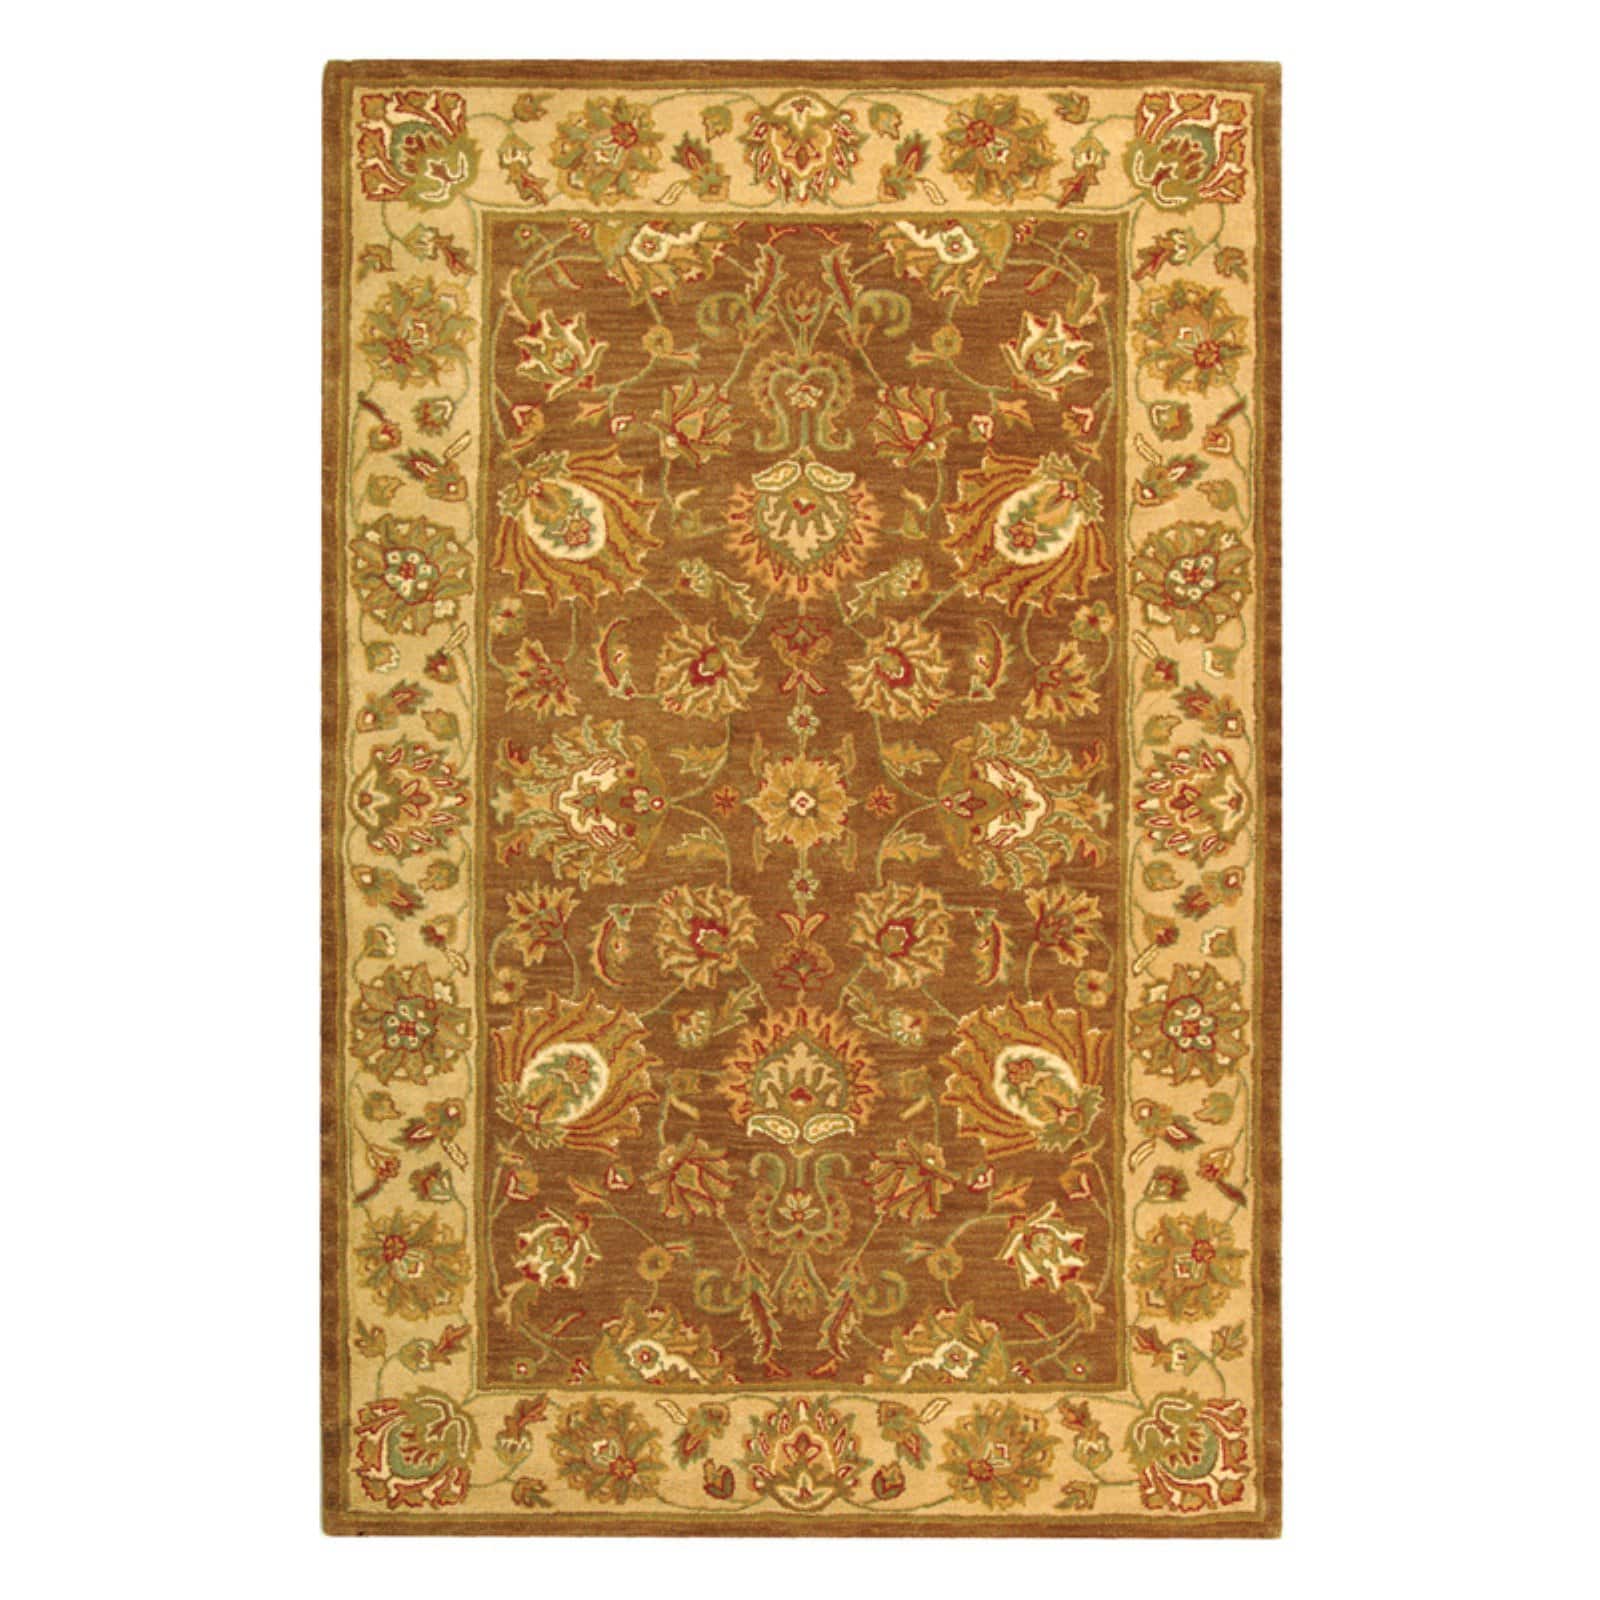 SAFAVIEH Heritage Regis Traditional Wool Runner Rug, Brown/Ivory, 2'3" x 14' - image 4 of 9